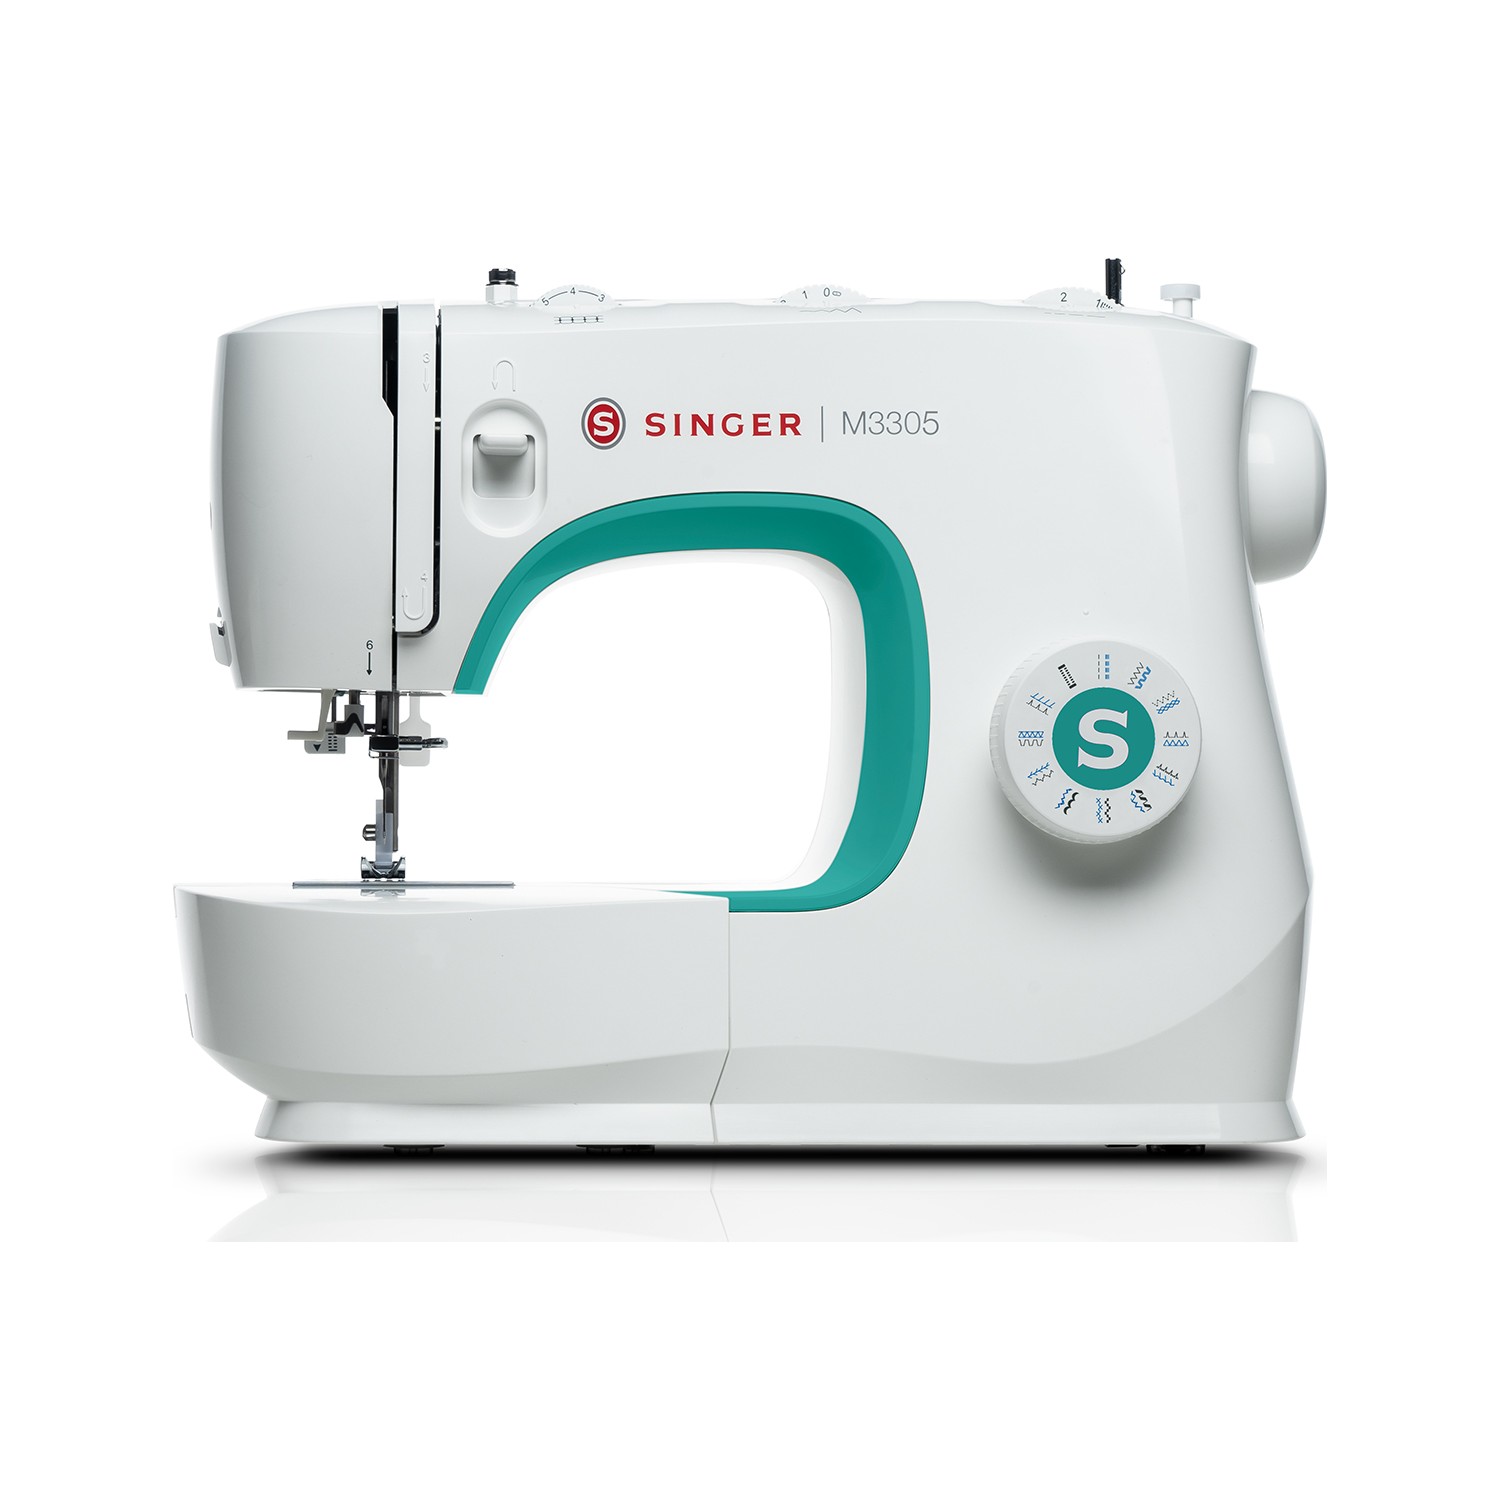 Singer M3305 Sewing Machine